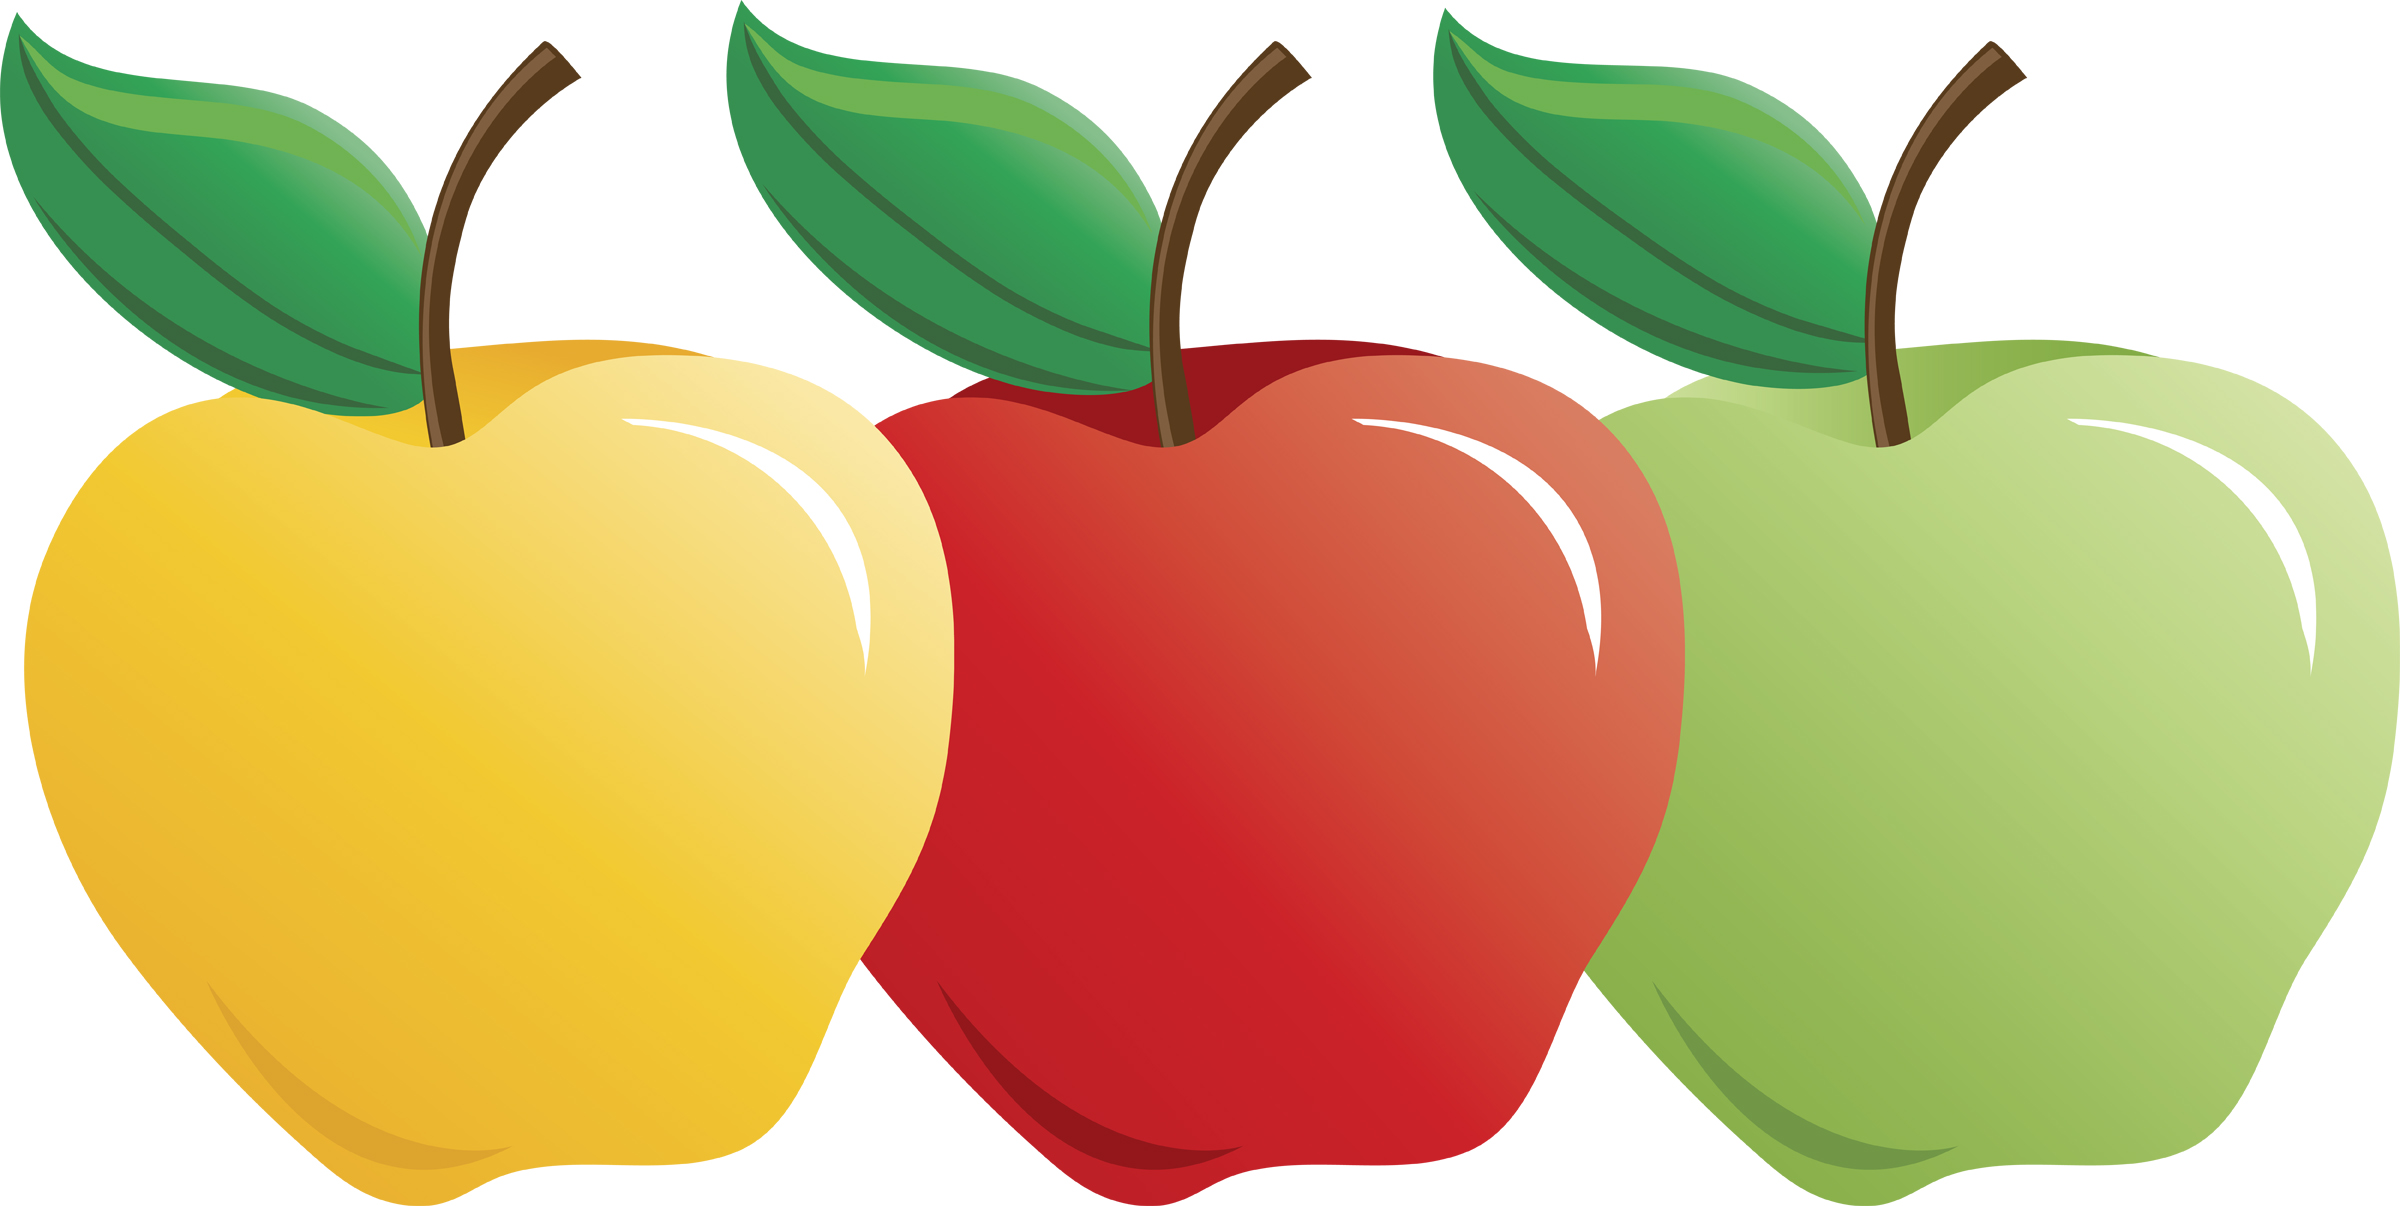 Apples clip art - ClipartFox